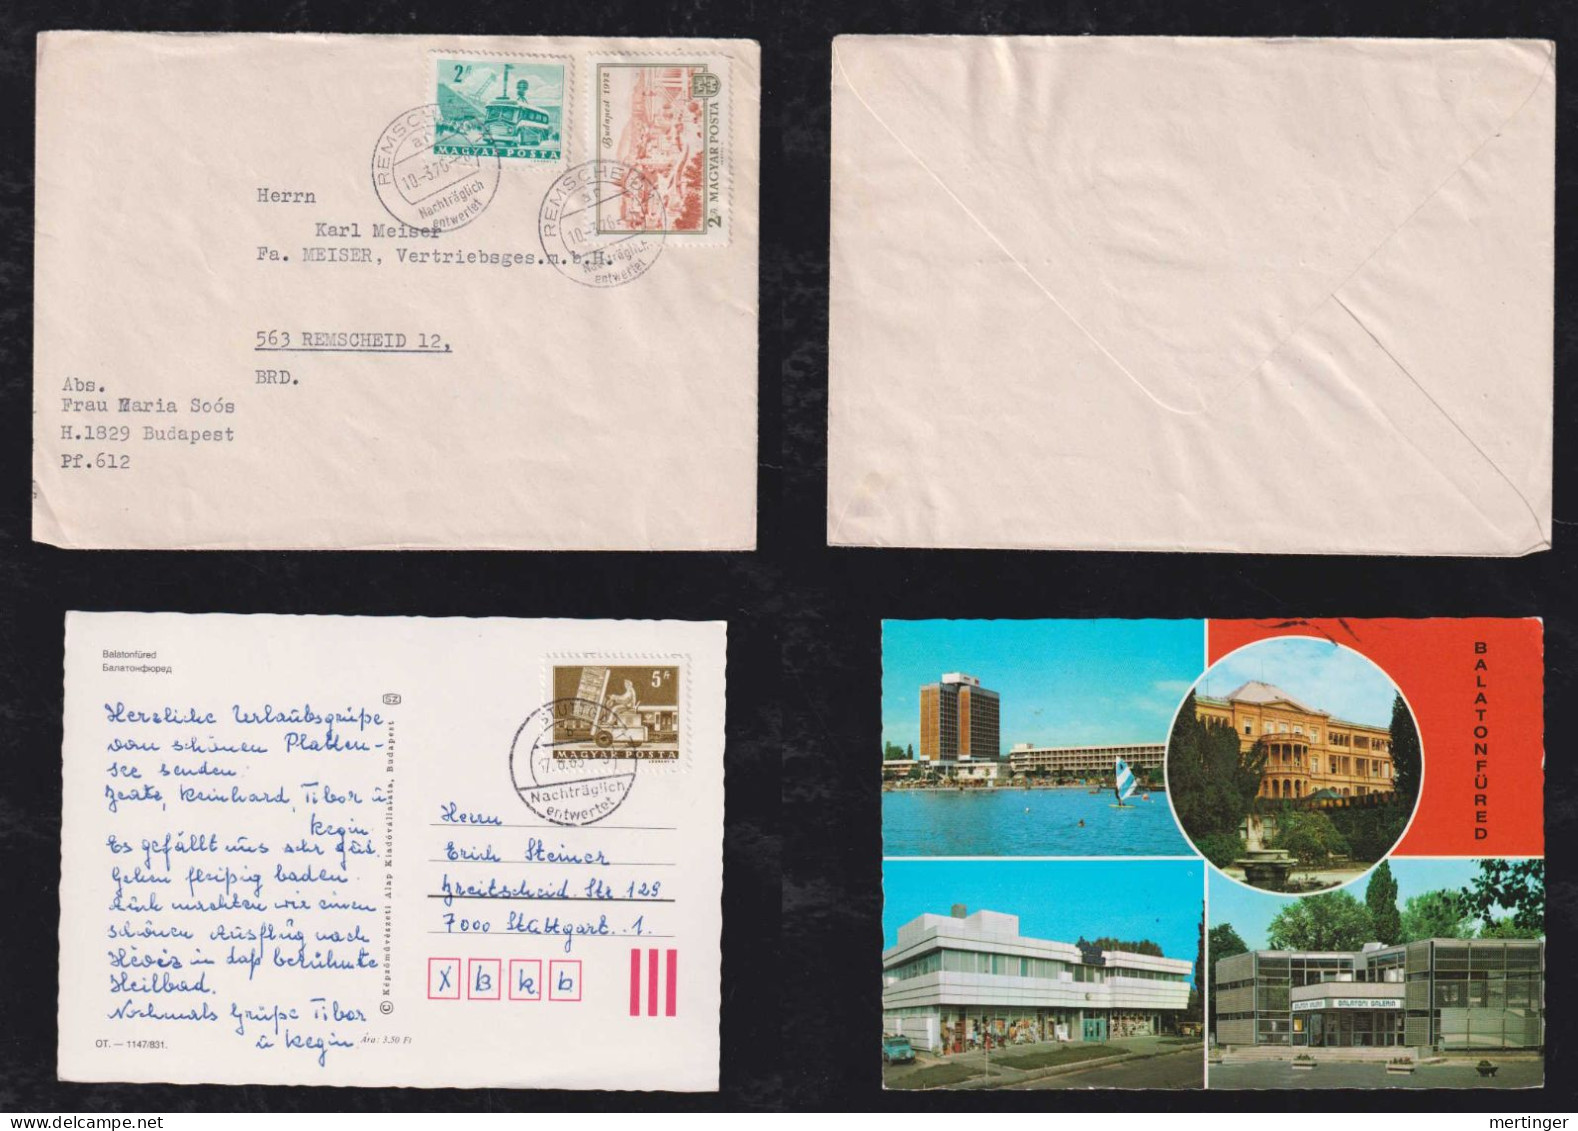 Ungarn Hungary 1976 + 1983 Cover + Postcard Nachträglich Entwertet Stuttgart + Remscheid - Briefe U. Dokumente